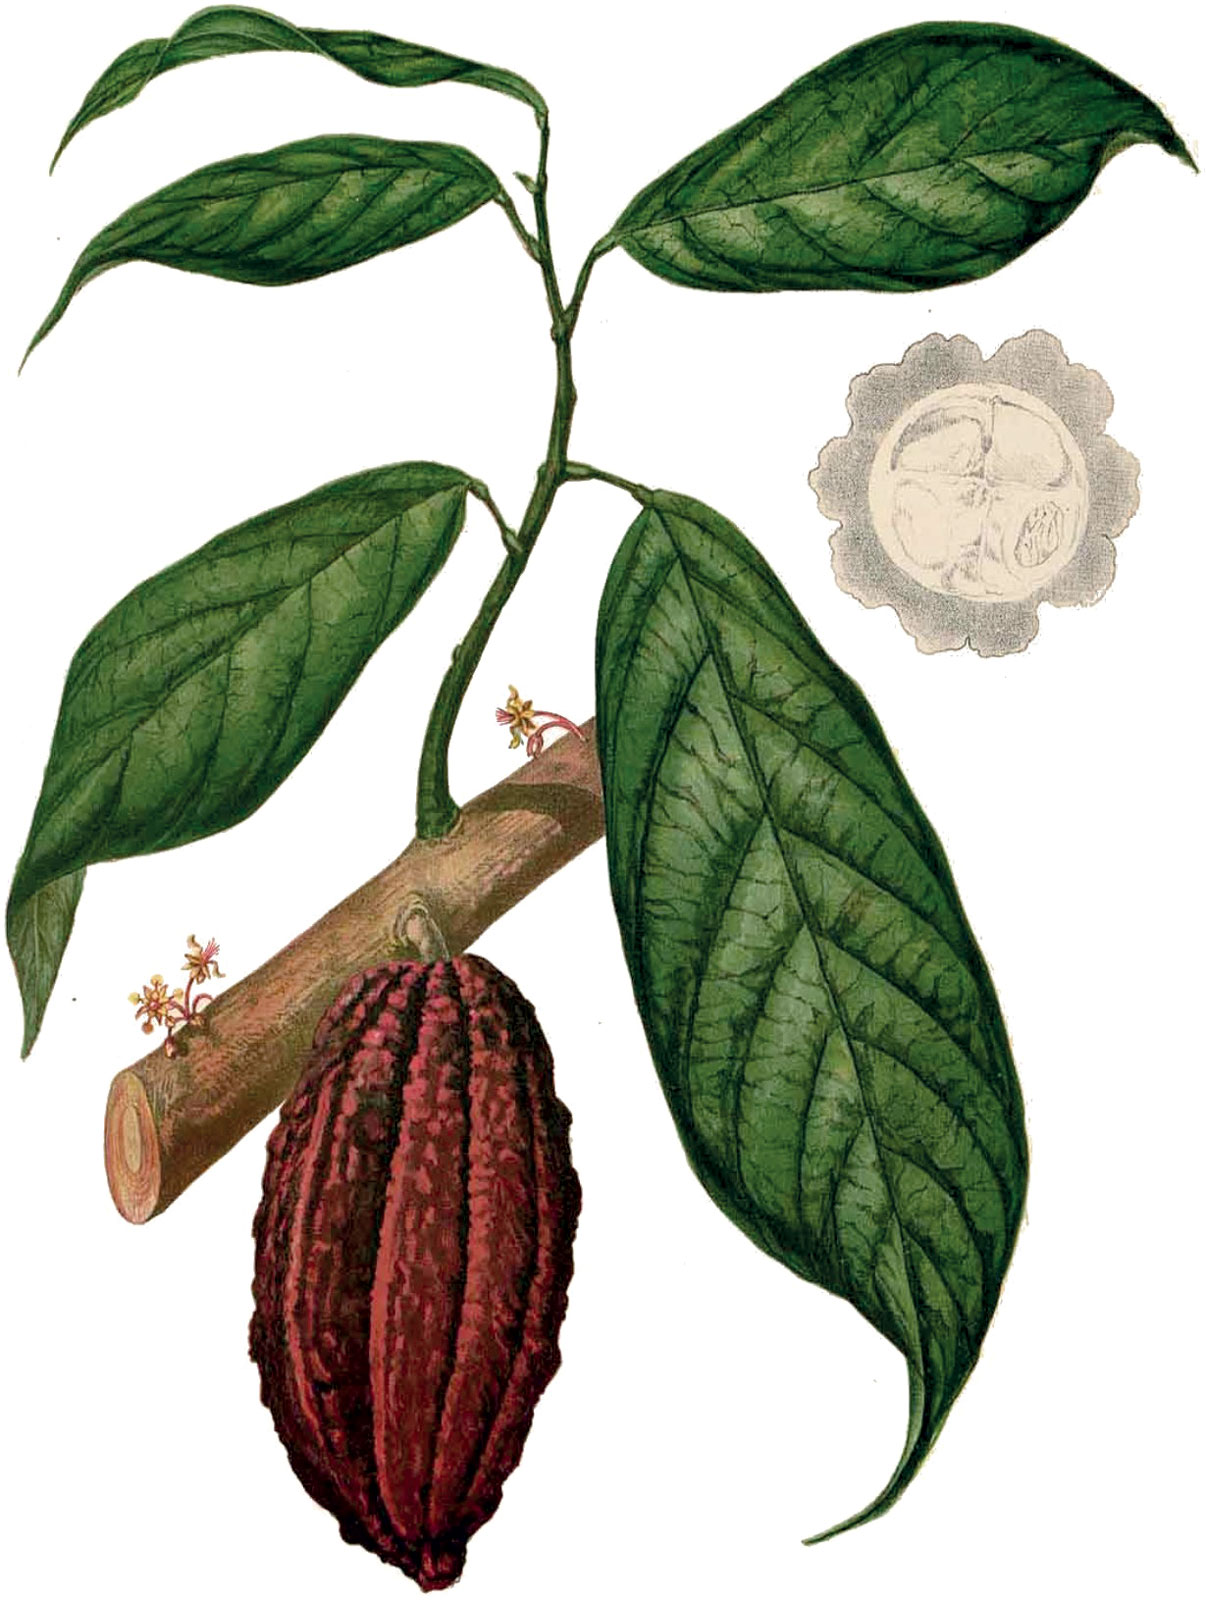 Francisco Manuel Blanco, *Theobroma cacao*, *ca*. 1880 